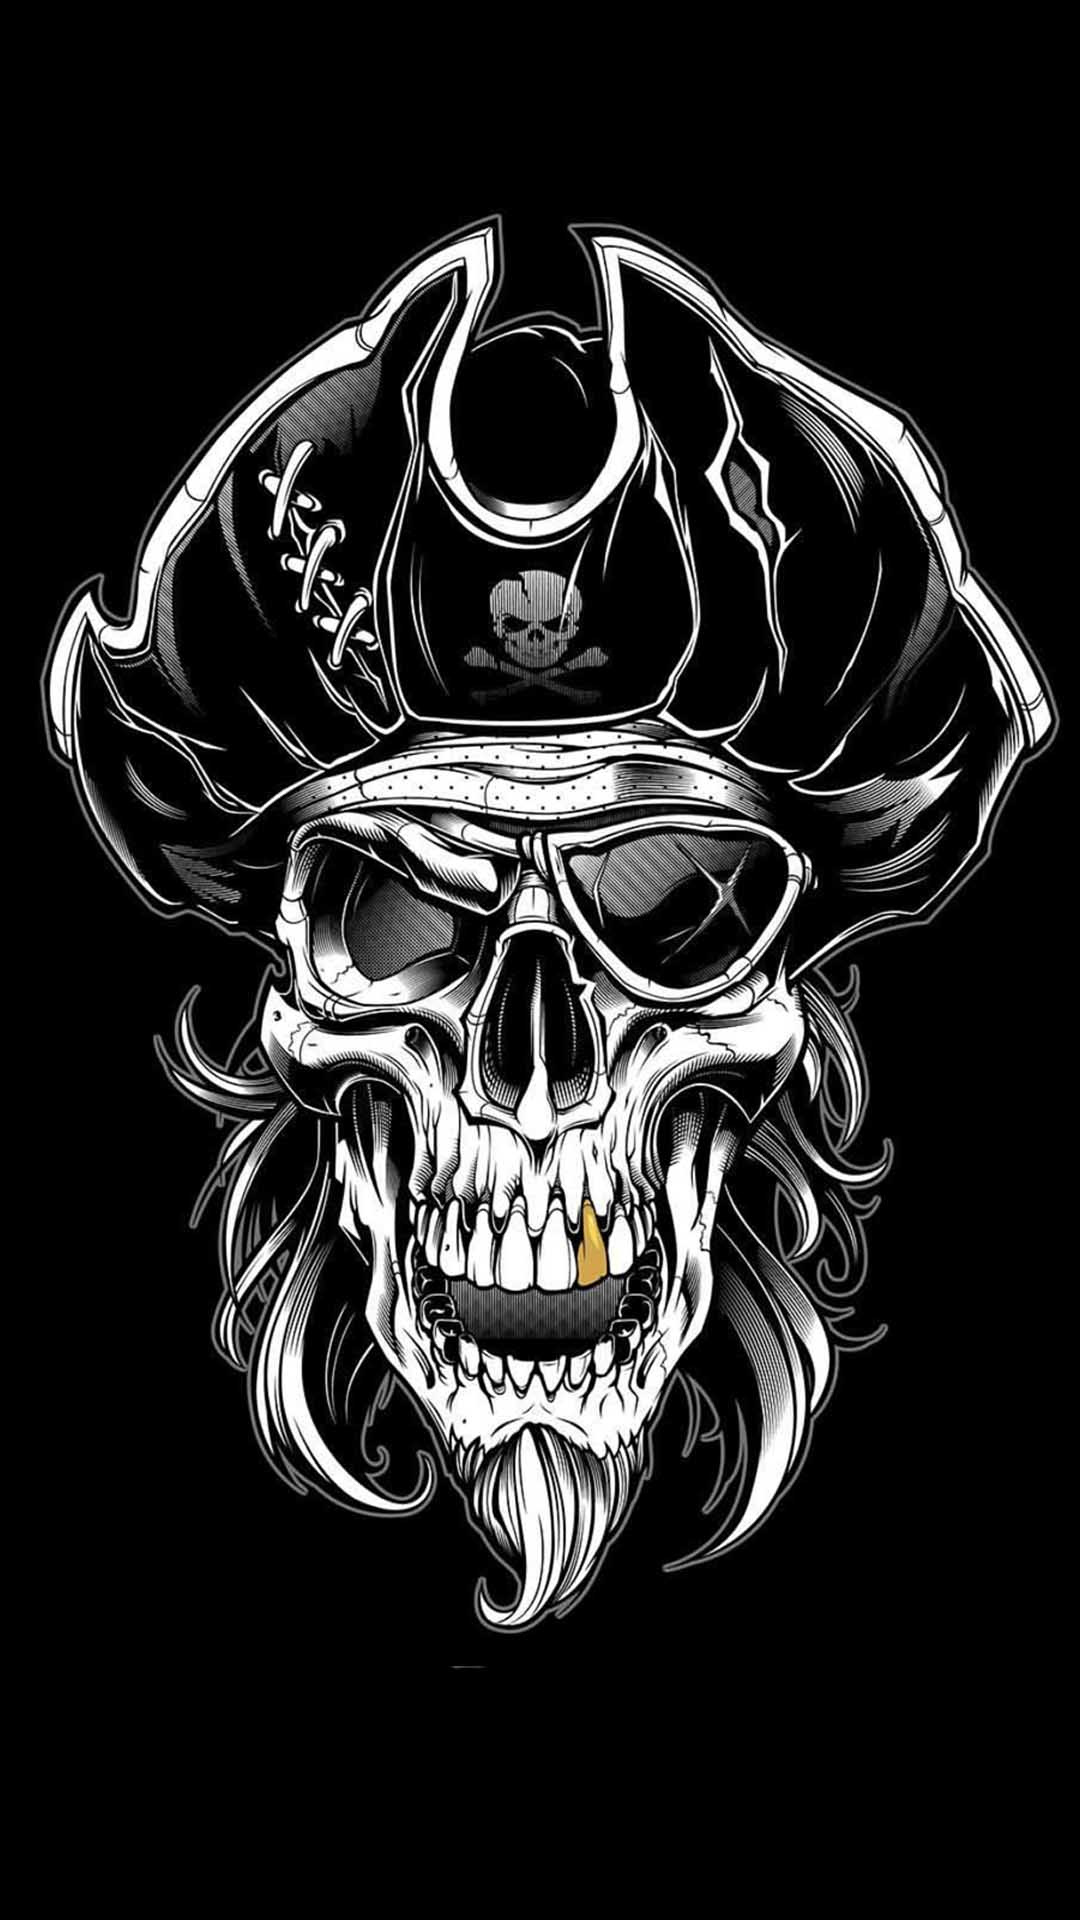 sfondi pirata per iphone,cranio,osso,maglietta,illustrazione,font